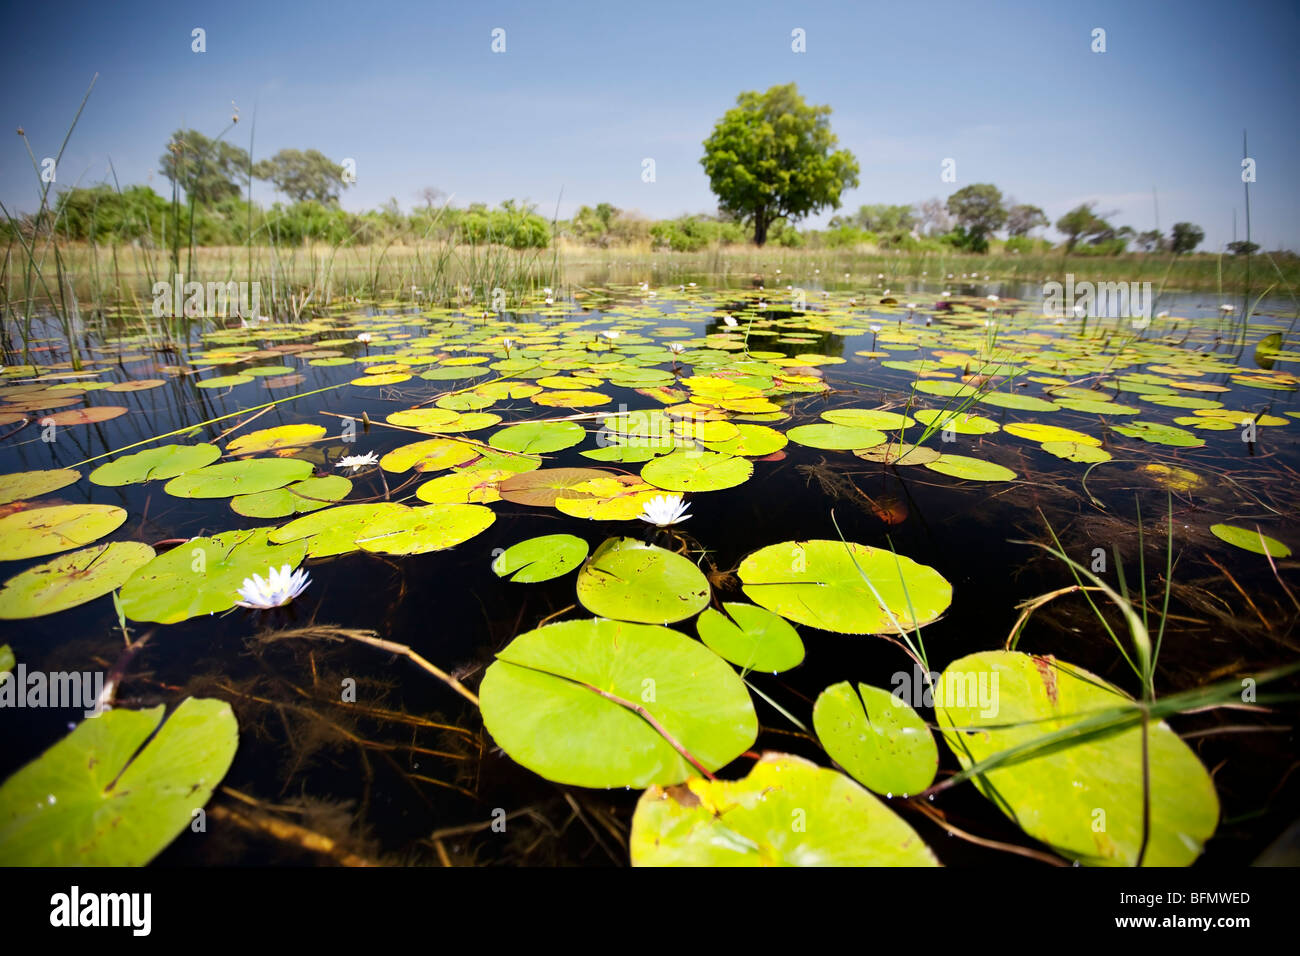 Il Botswana, Okavango Delta. Lilys coprono la superficie delle acque cristalline del delta dell'Okavango. Foto Stock